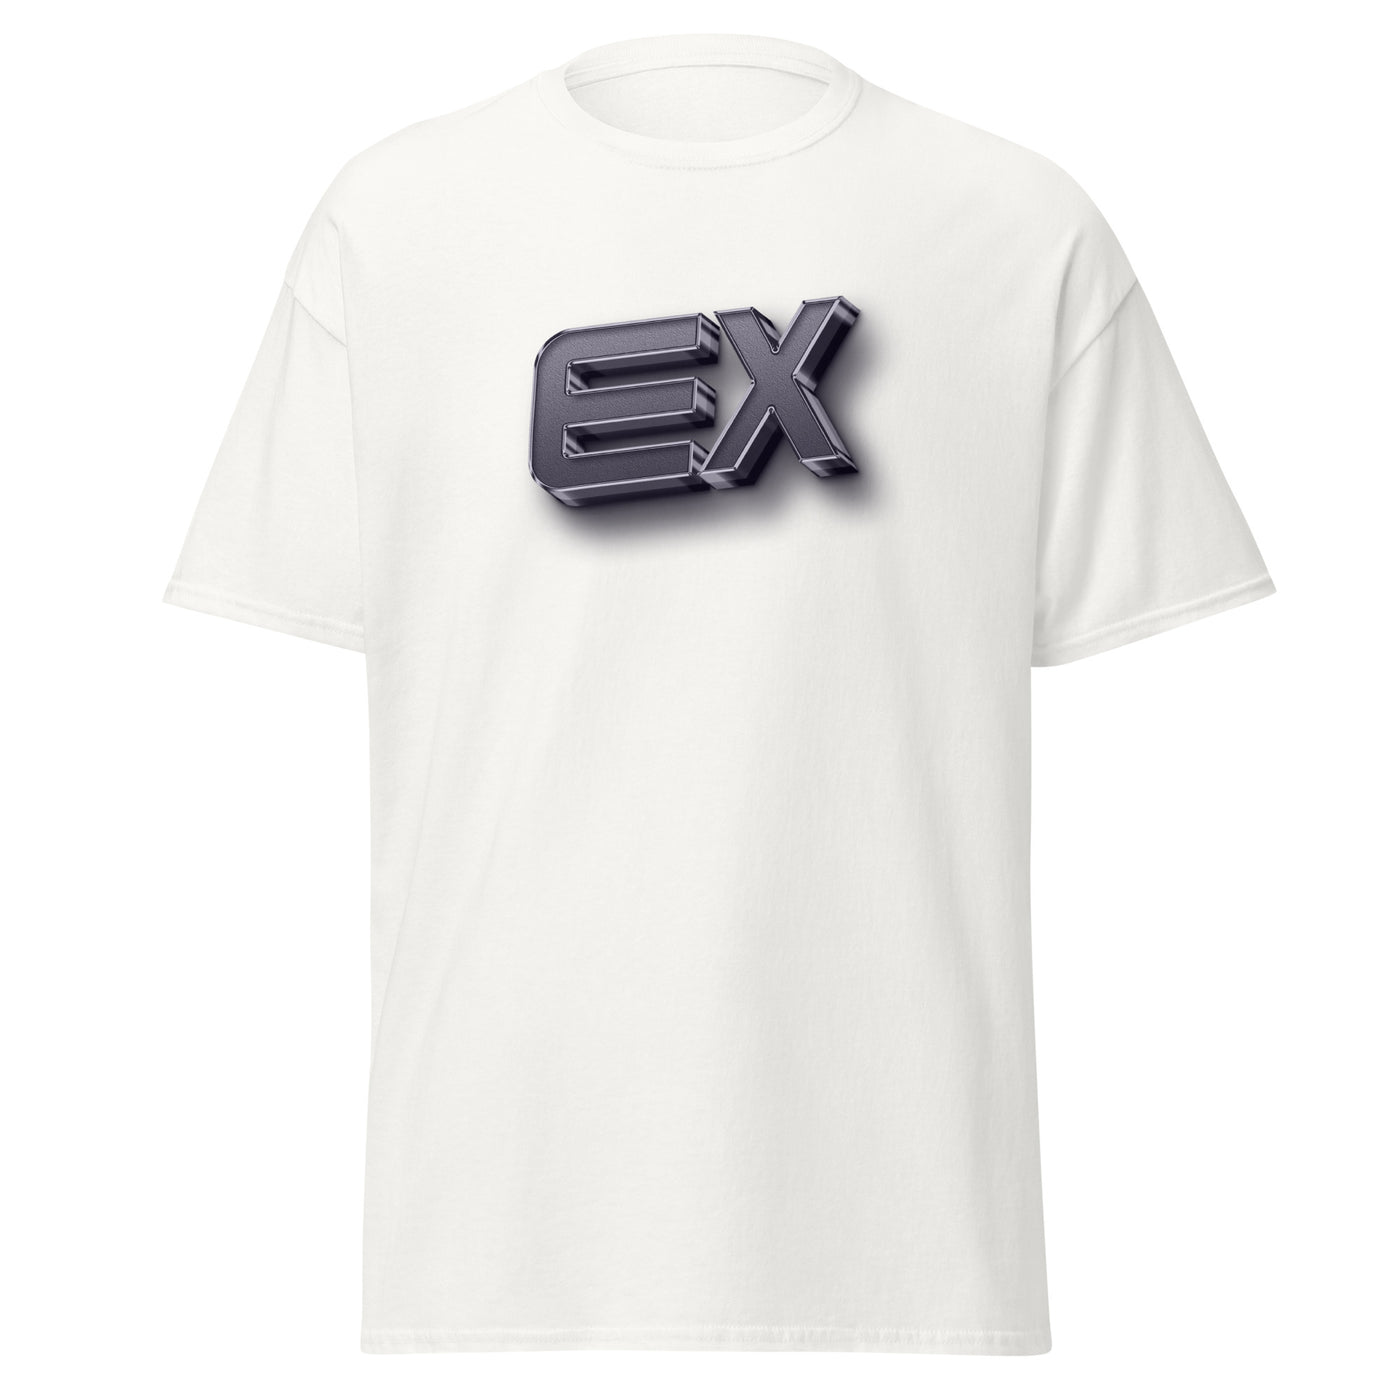 Extract Esports Unisex T-Shirt